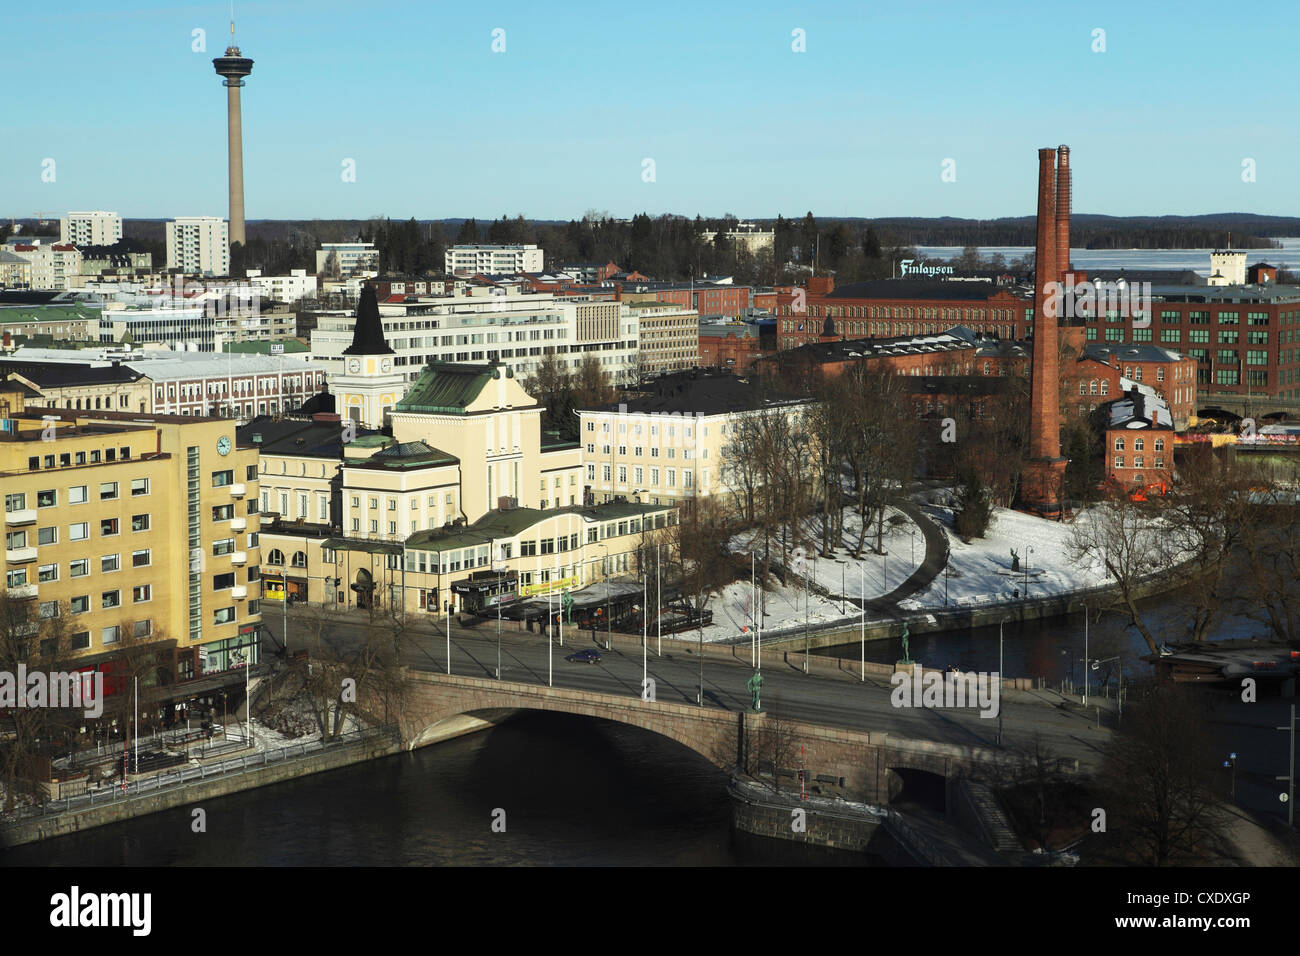 La Hameenkatu puente cruza el río Tammerkoski por el teatro en Tampere, Tampere Pirkanmaa, Finlandia, Escandinavia, Europa Foto de stock